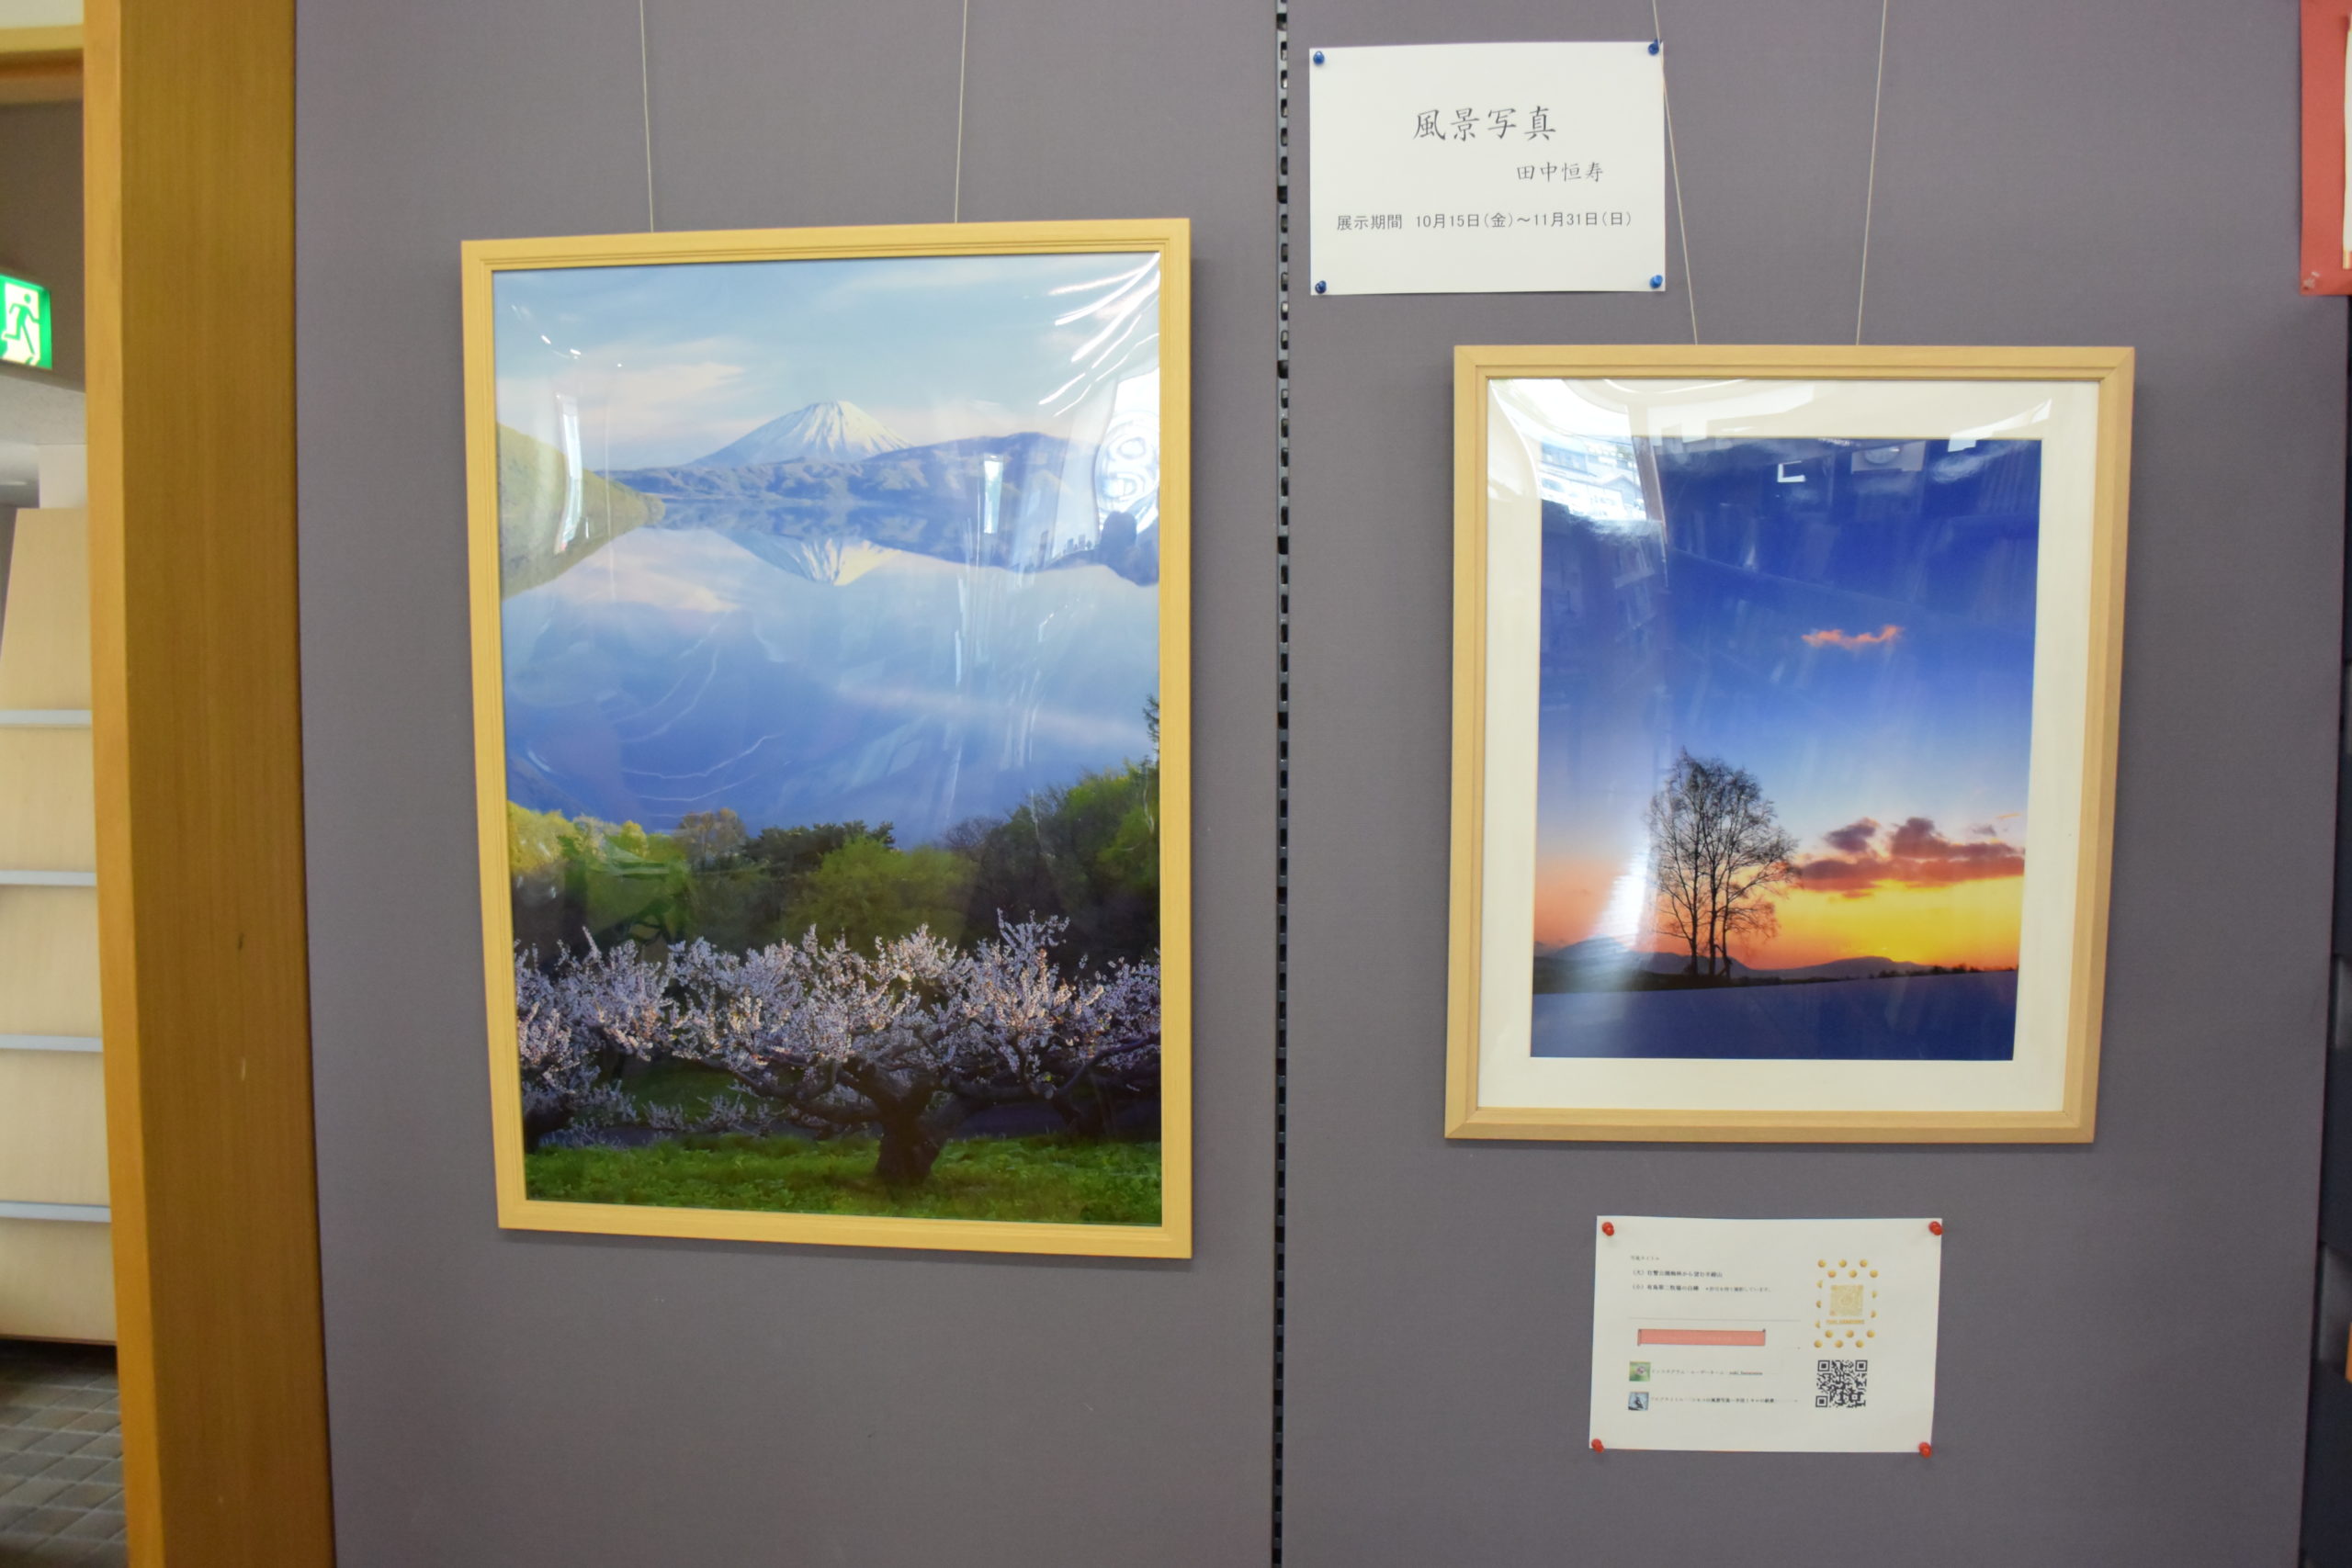 趣味の作品展示「風景写真」田中恒寿さん